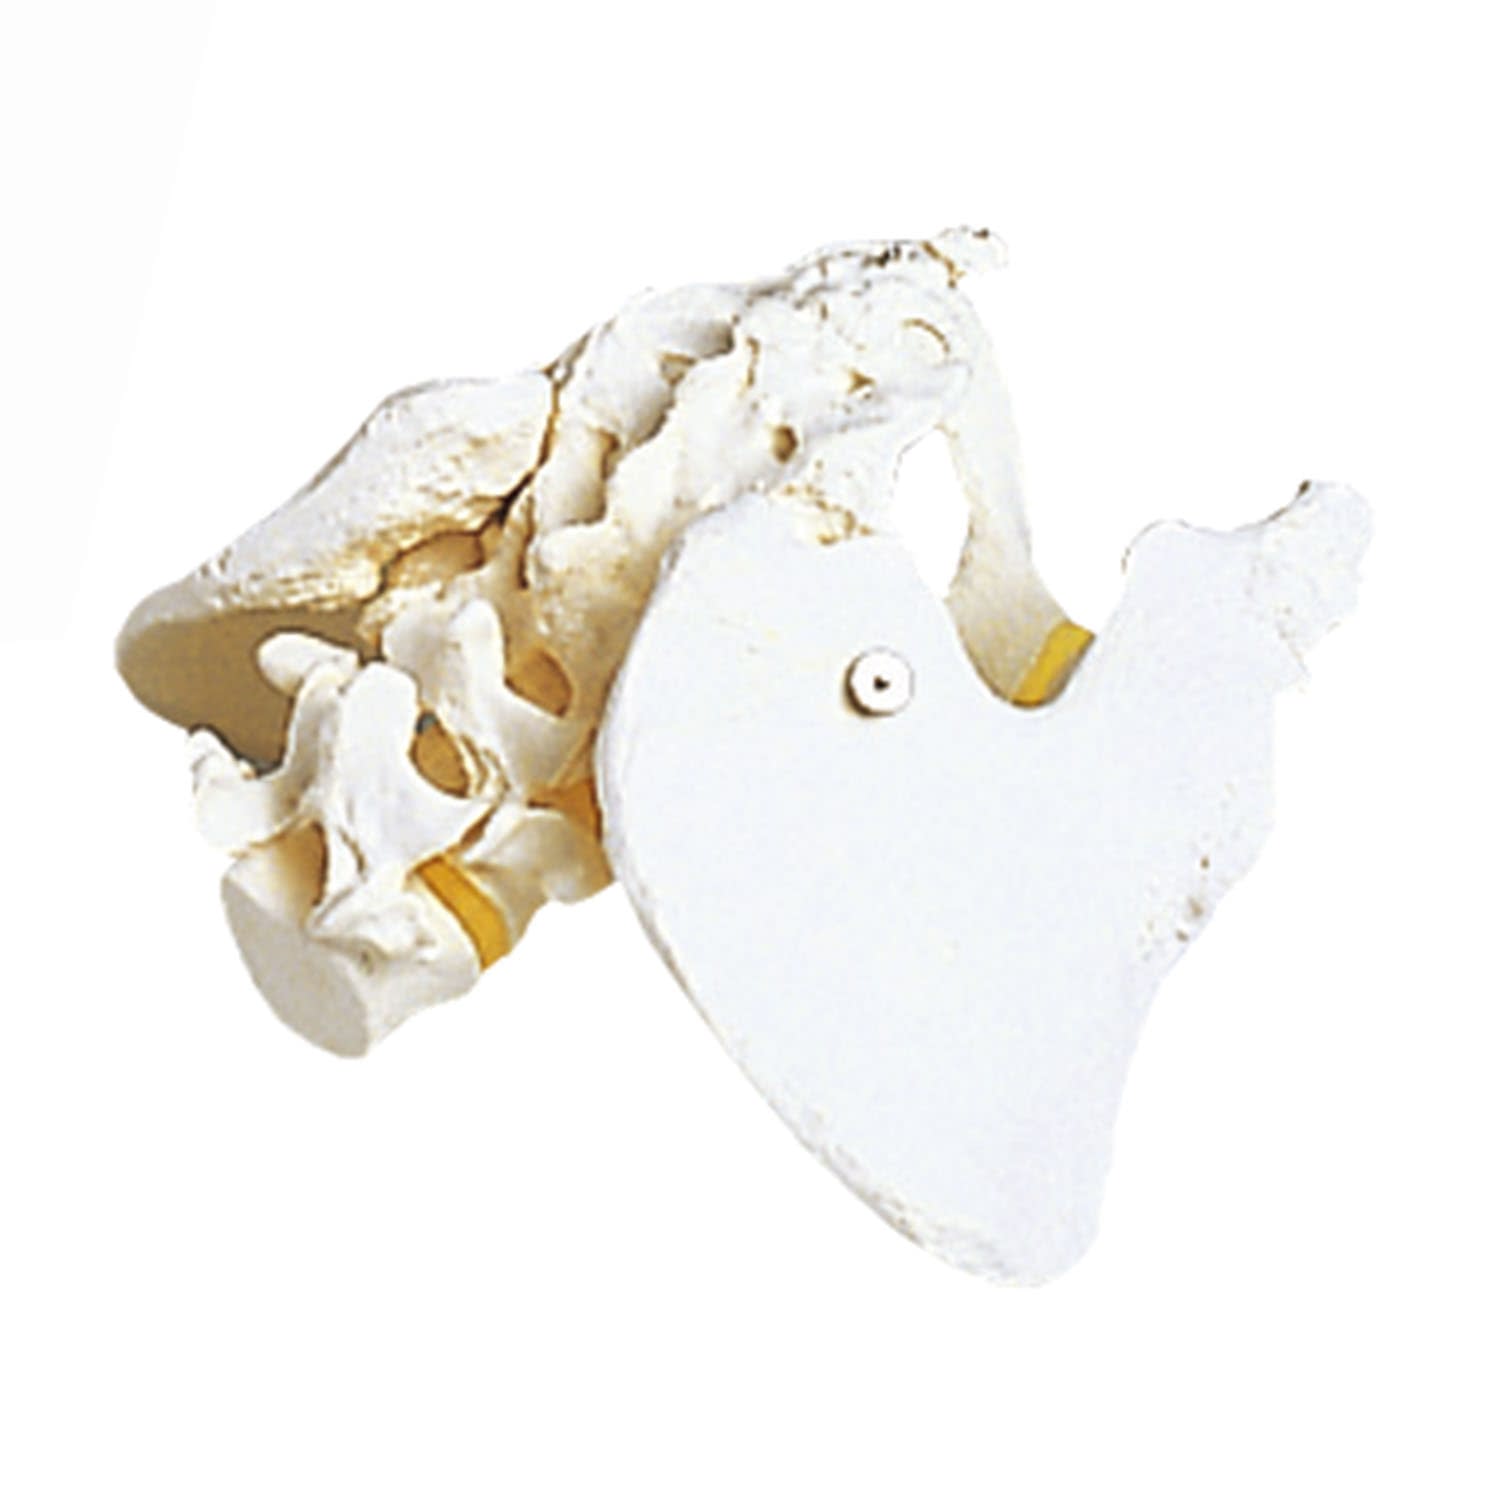 (11-2195-00)骨盤モデル（女性） A61(19X25X24CM) ｺﾂﾊﾞﾝﾓﾃﾞﾙ(京都科学)【1台単位】【2019年カタログ商品】